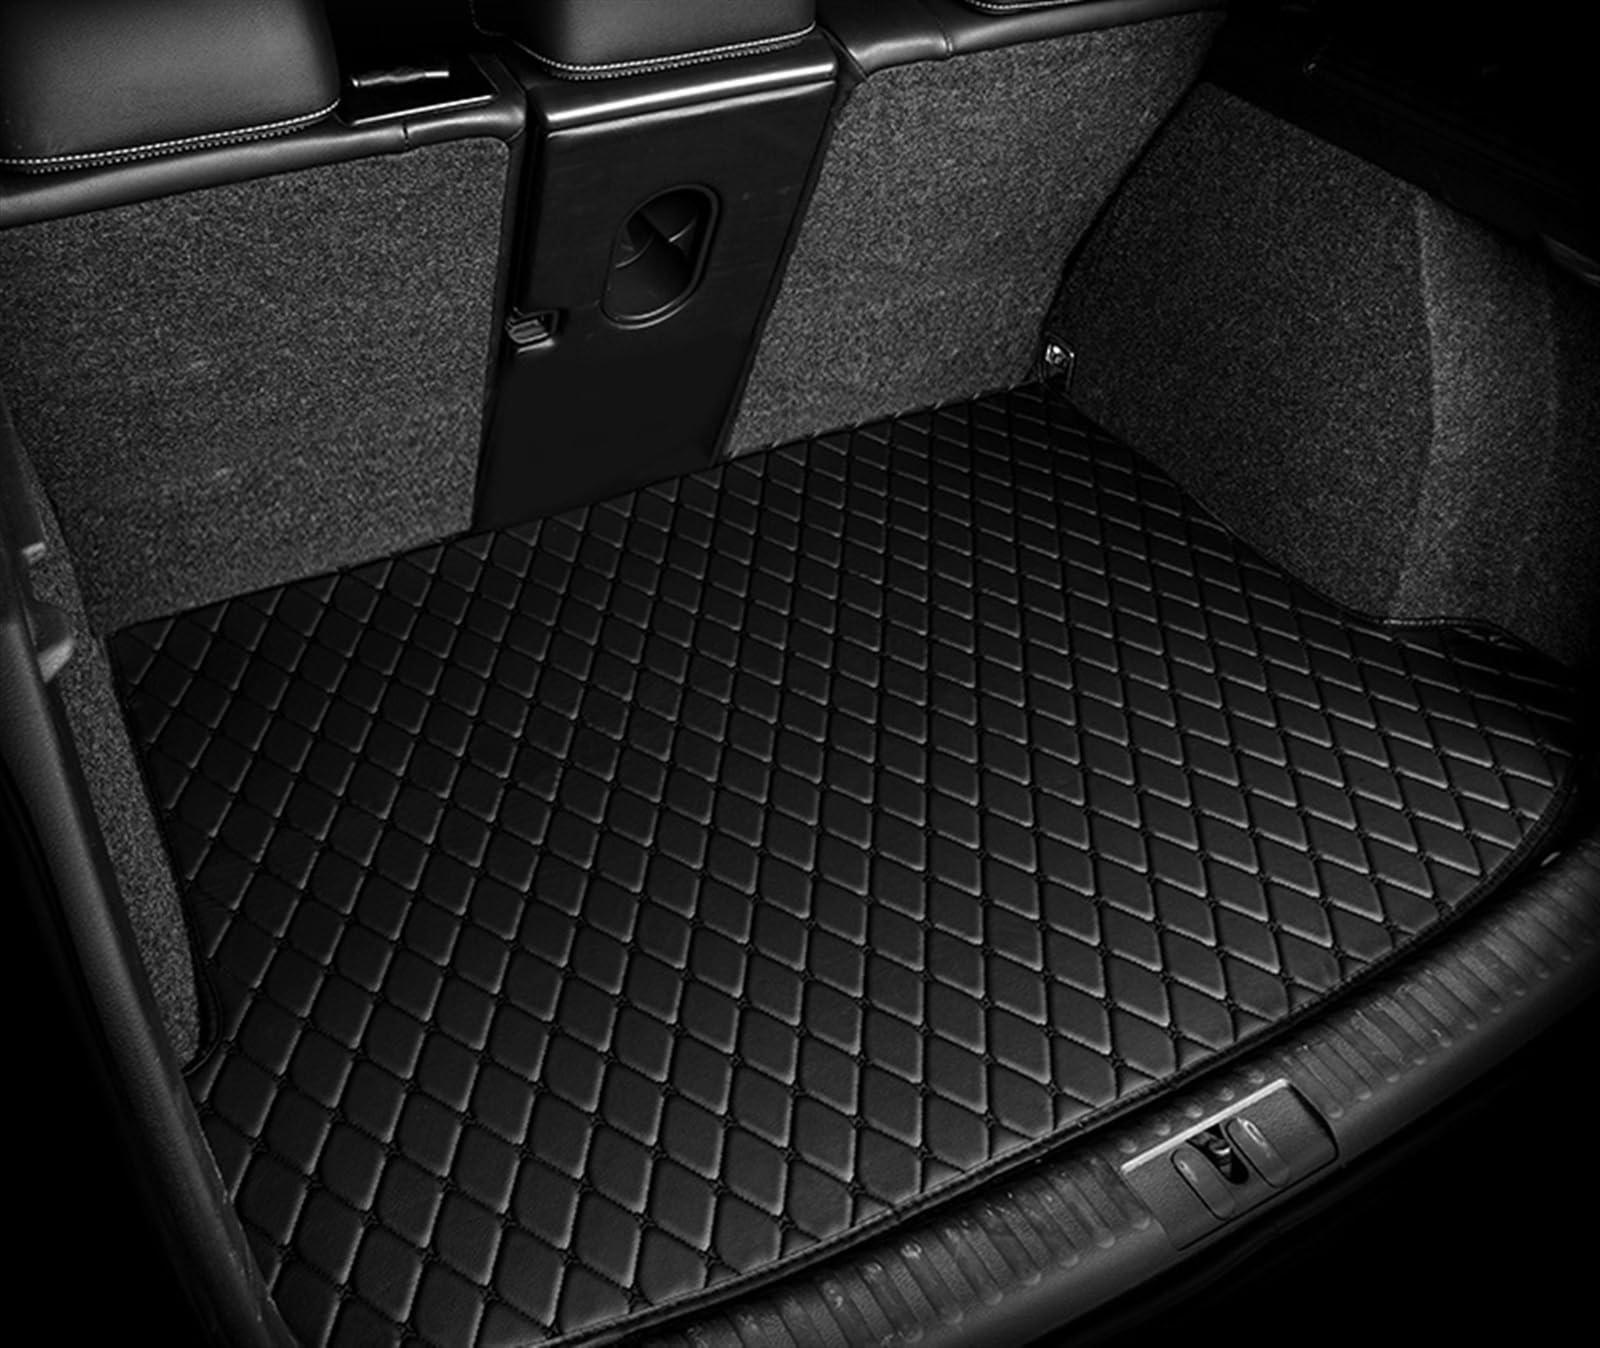 Auto-Fußmatten Kompatibel Mit Subaru Für Outback 2014 2013 2012 2011 2010, Autozubehör, Dekorative Teile, Auto-Fußmatten, Innenteppich, Styling-Schutz(7) von CNHDCFROO